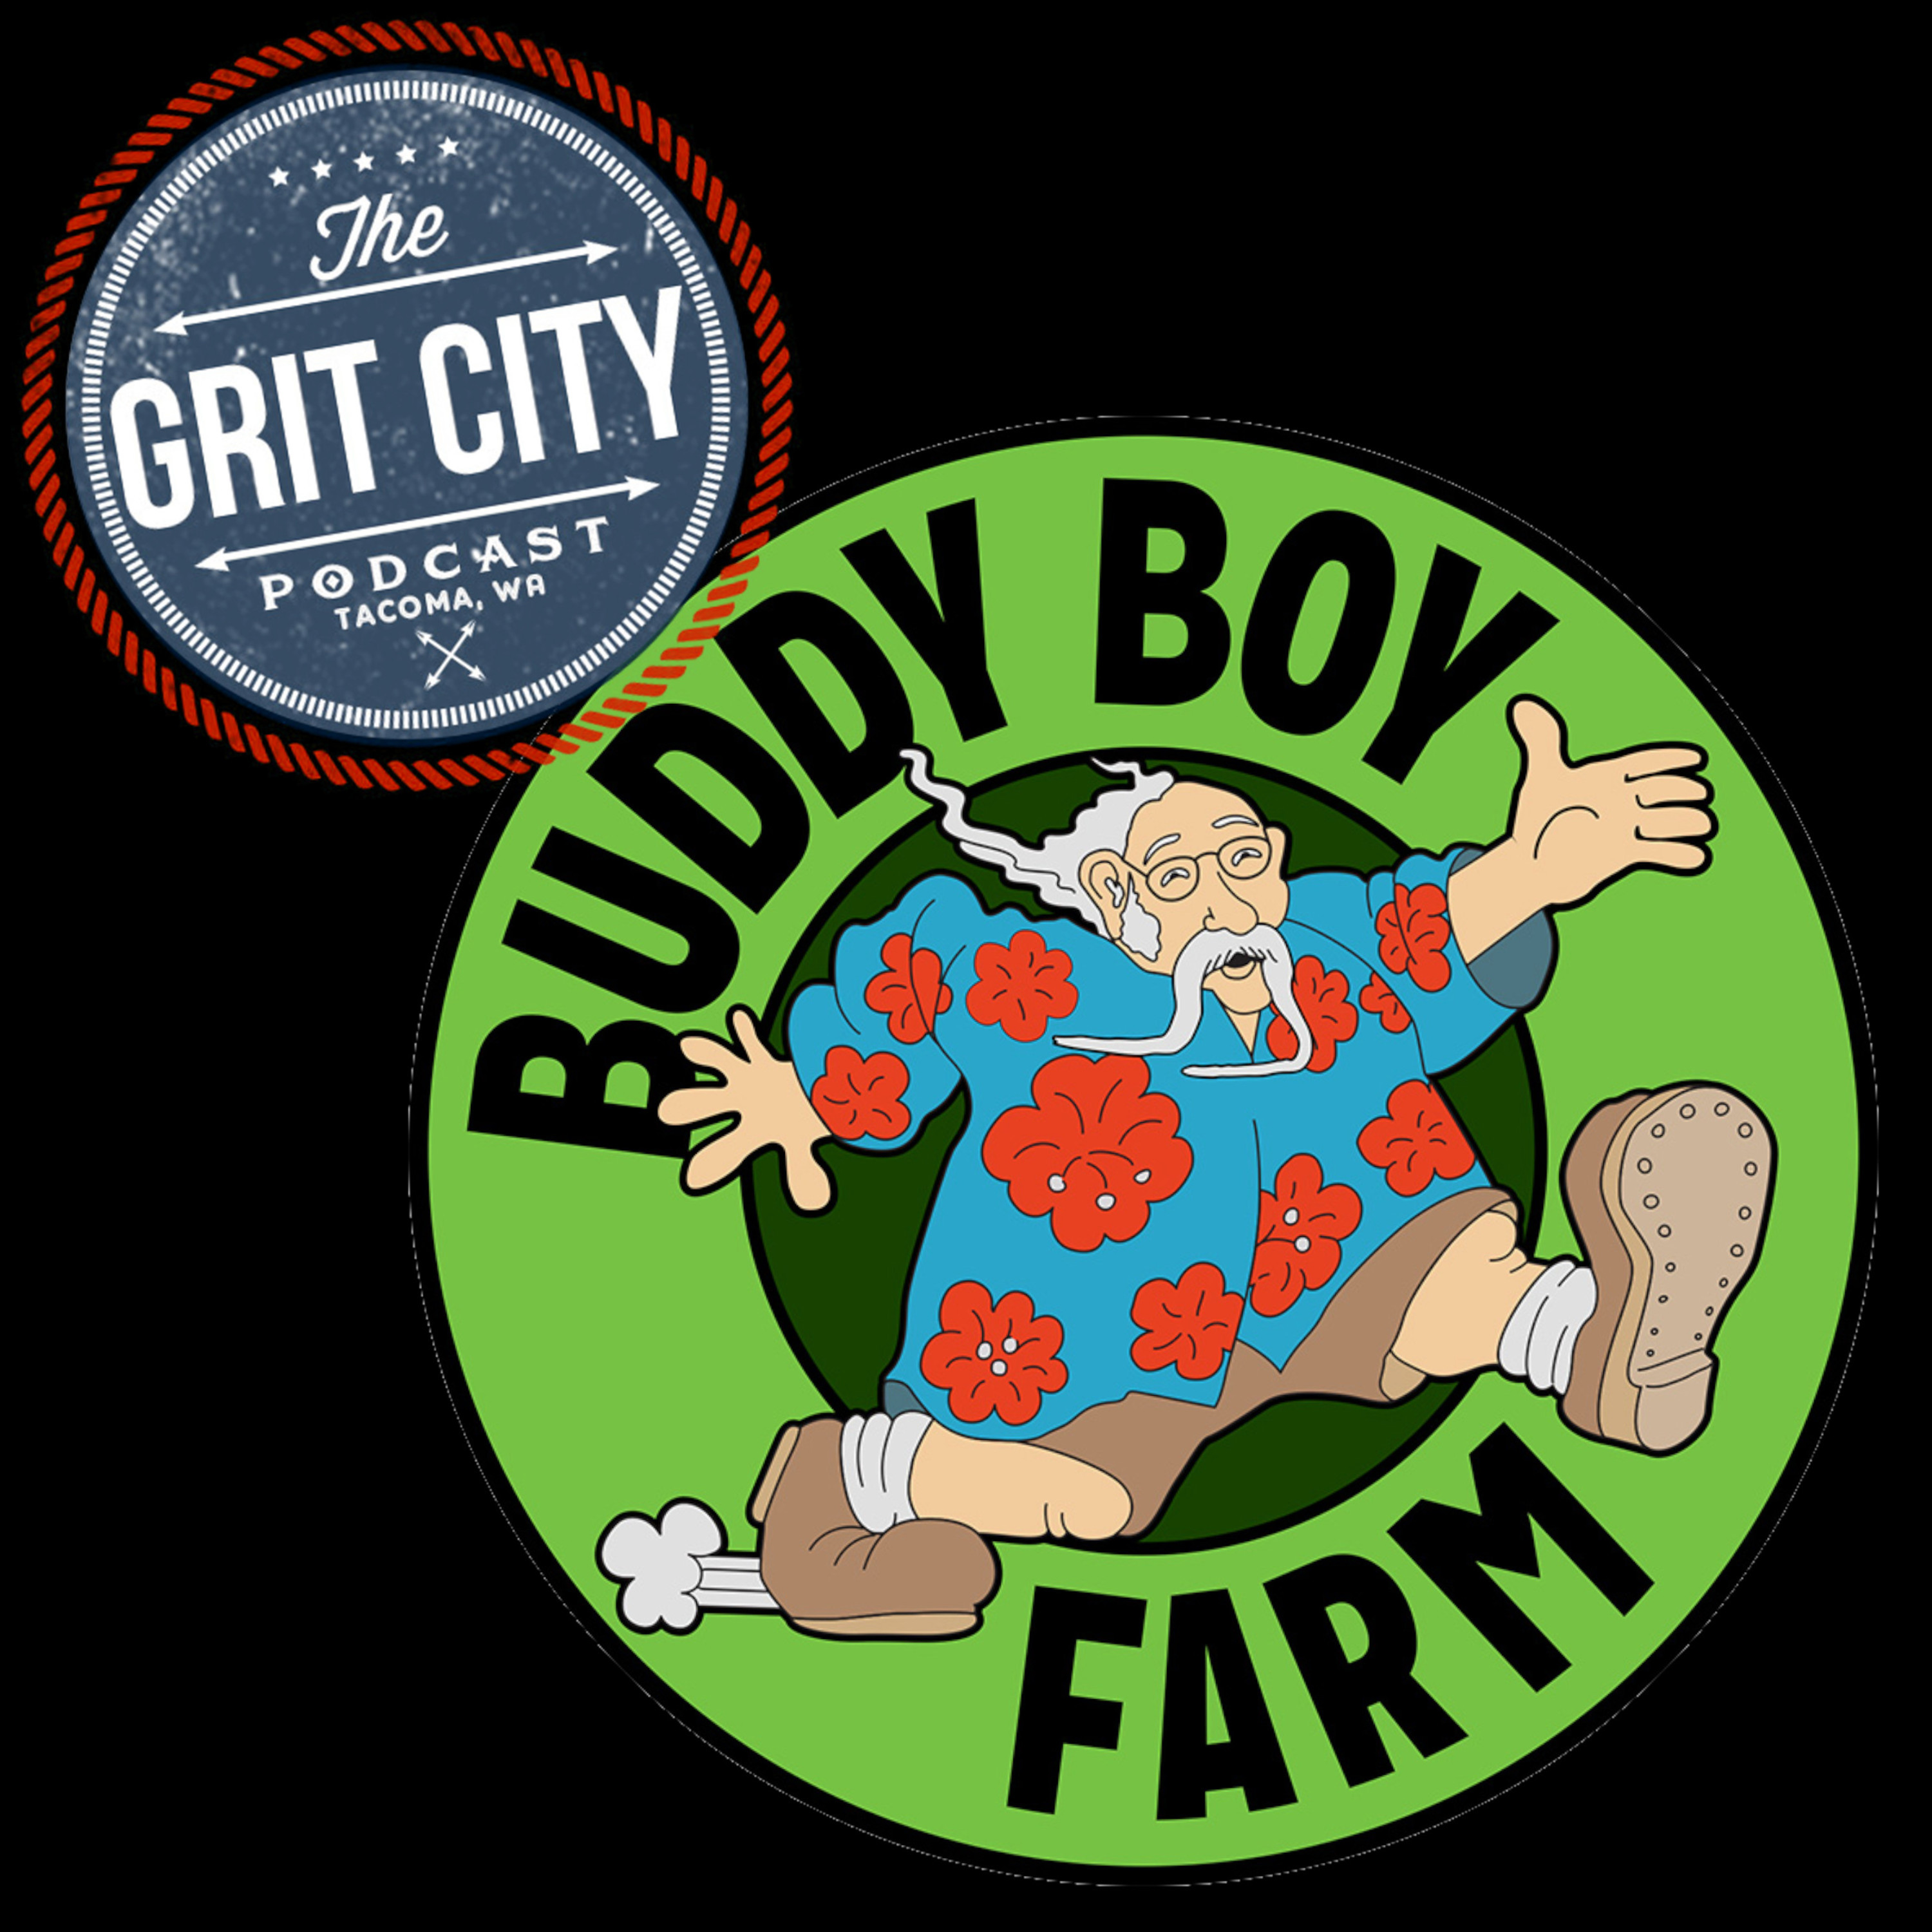 Buddy Boy Farm